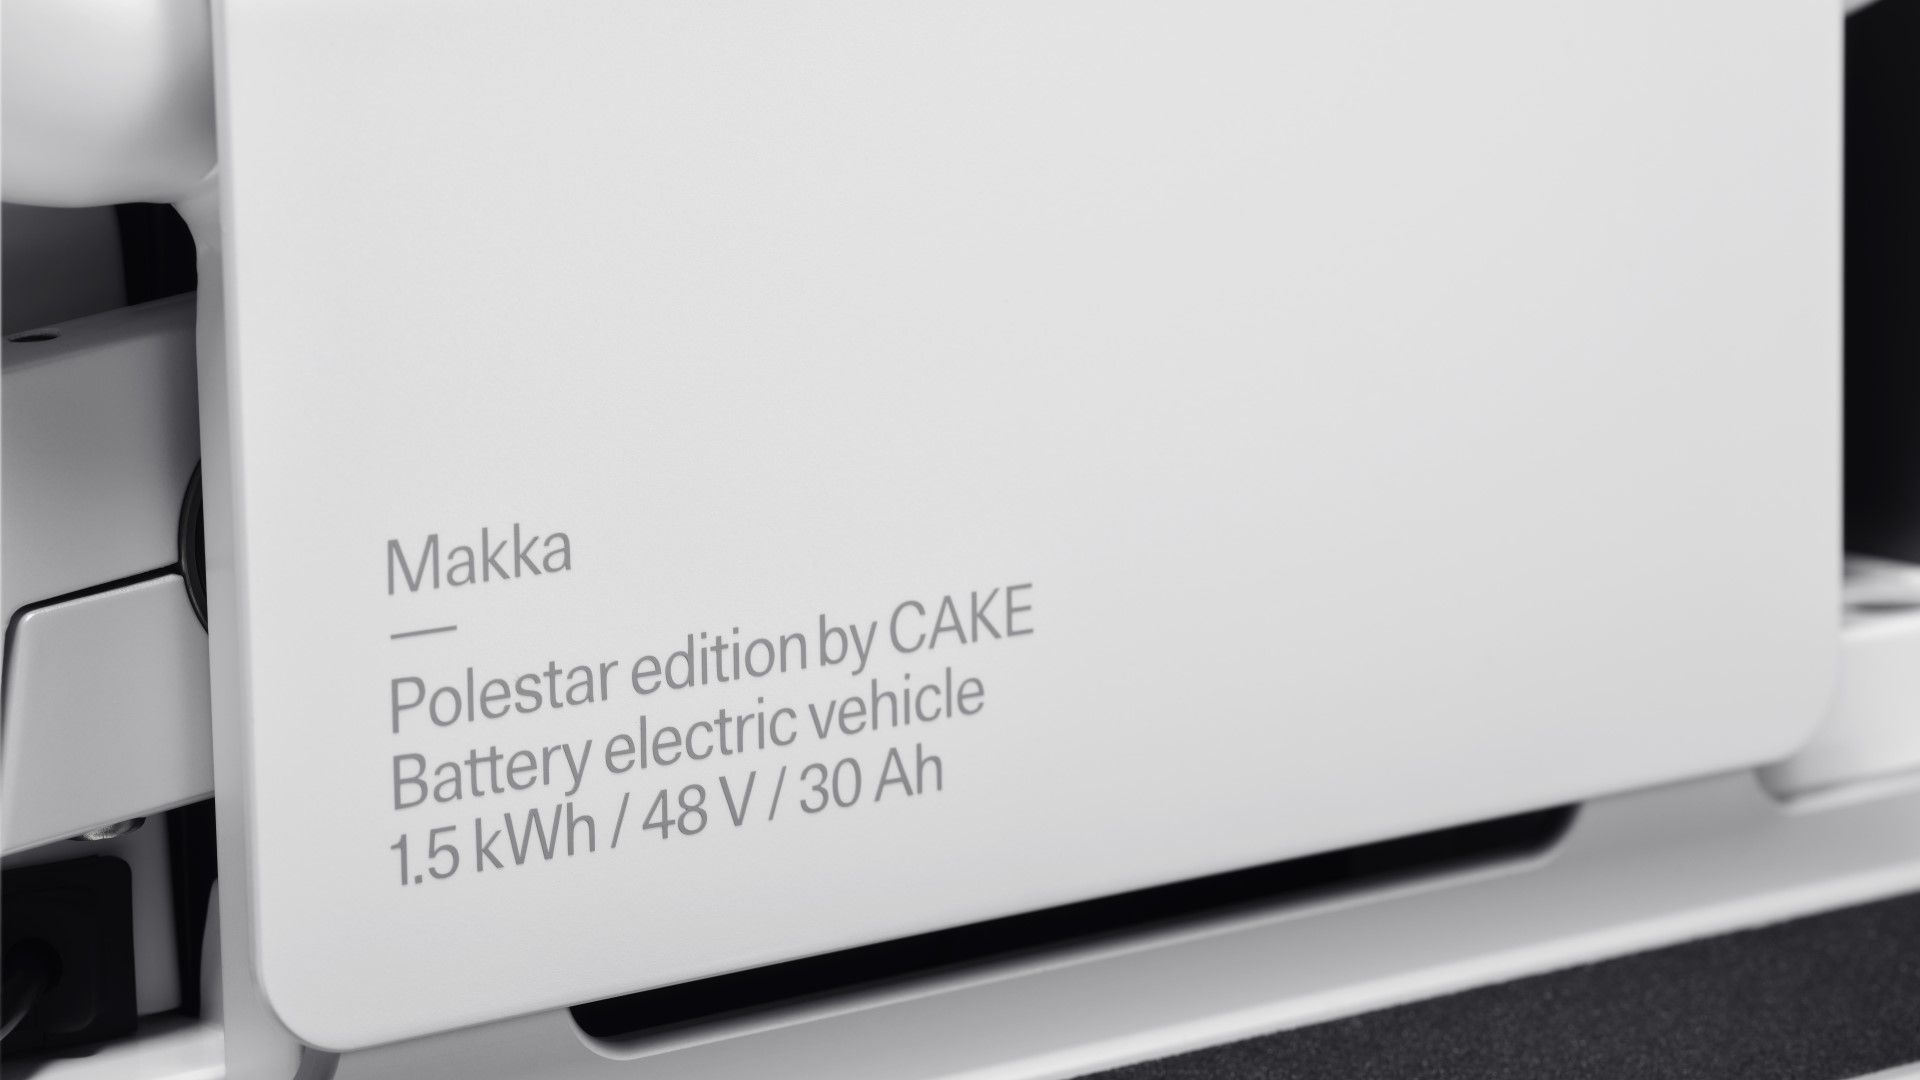 Η Polestar σε… δύο τροχούς με το CAKE Makka